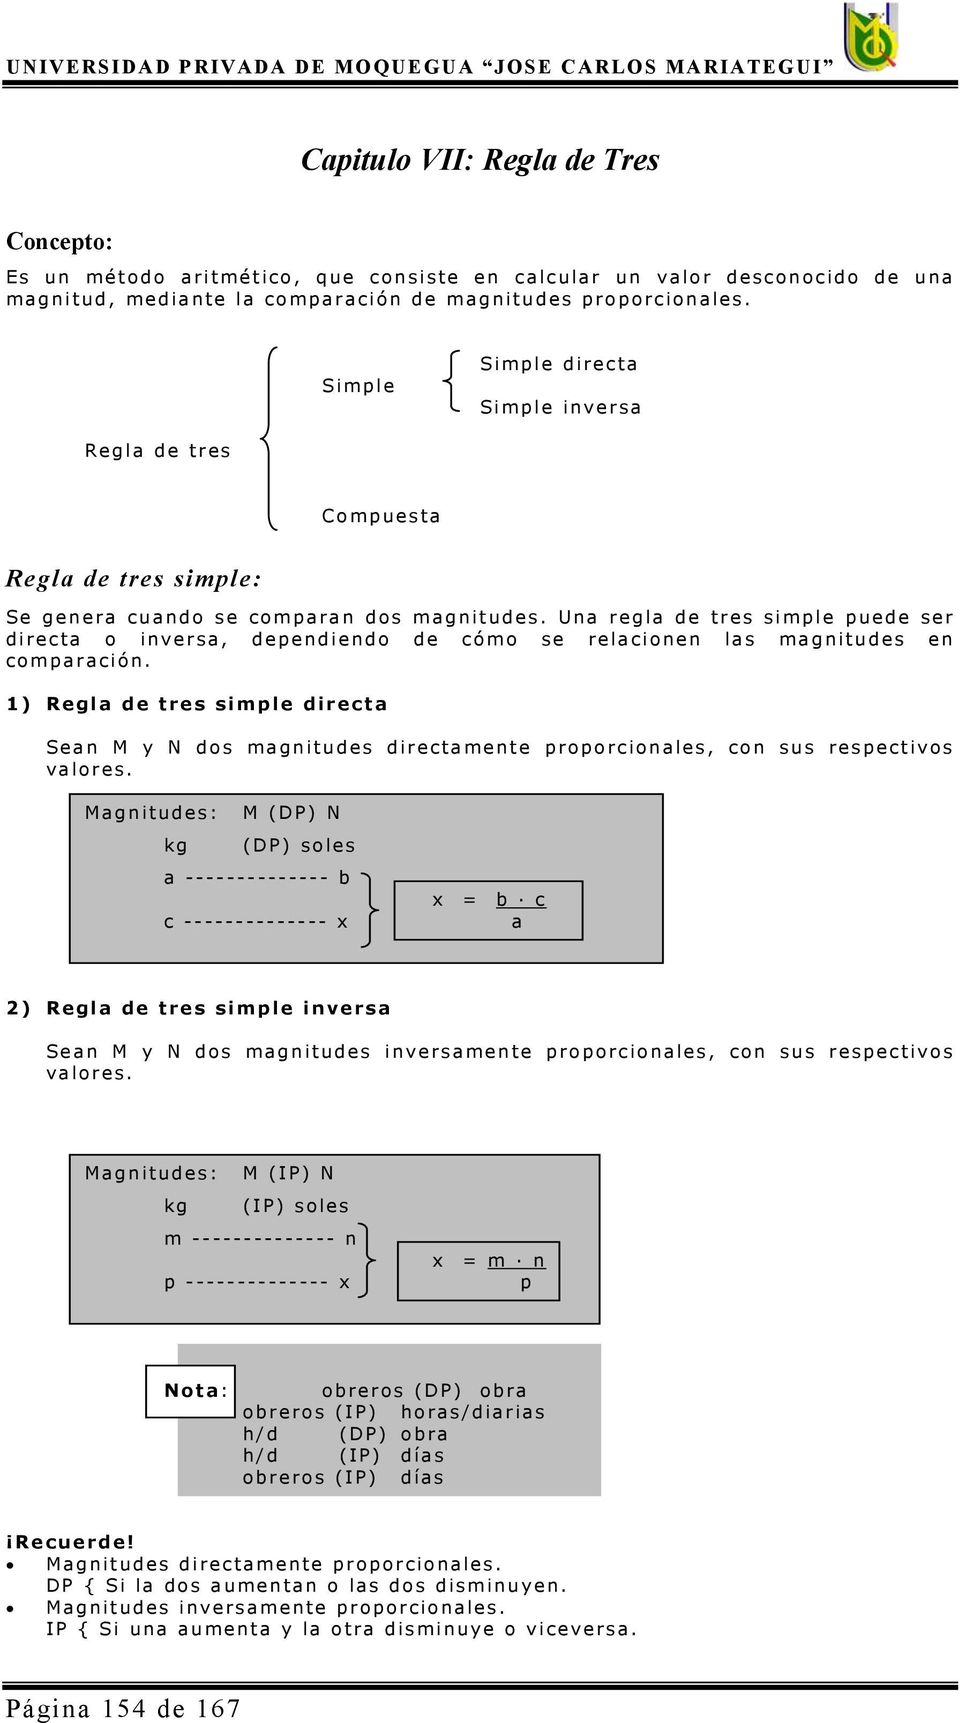 Una regla de tres simple puede ser directa o inversa, dependiendo de cómo se relacionen las magnitudes en comparación.